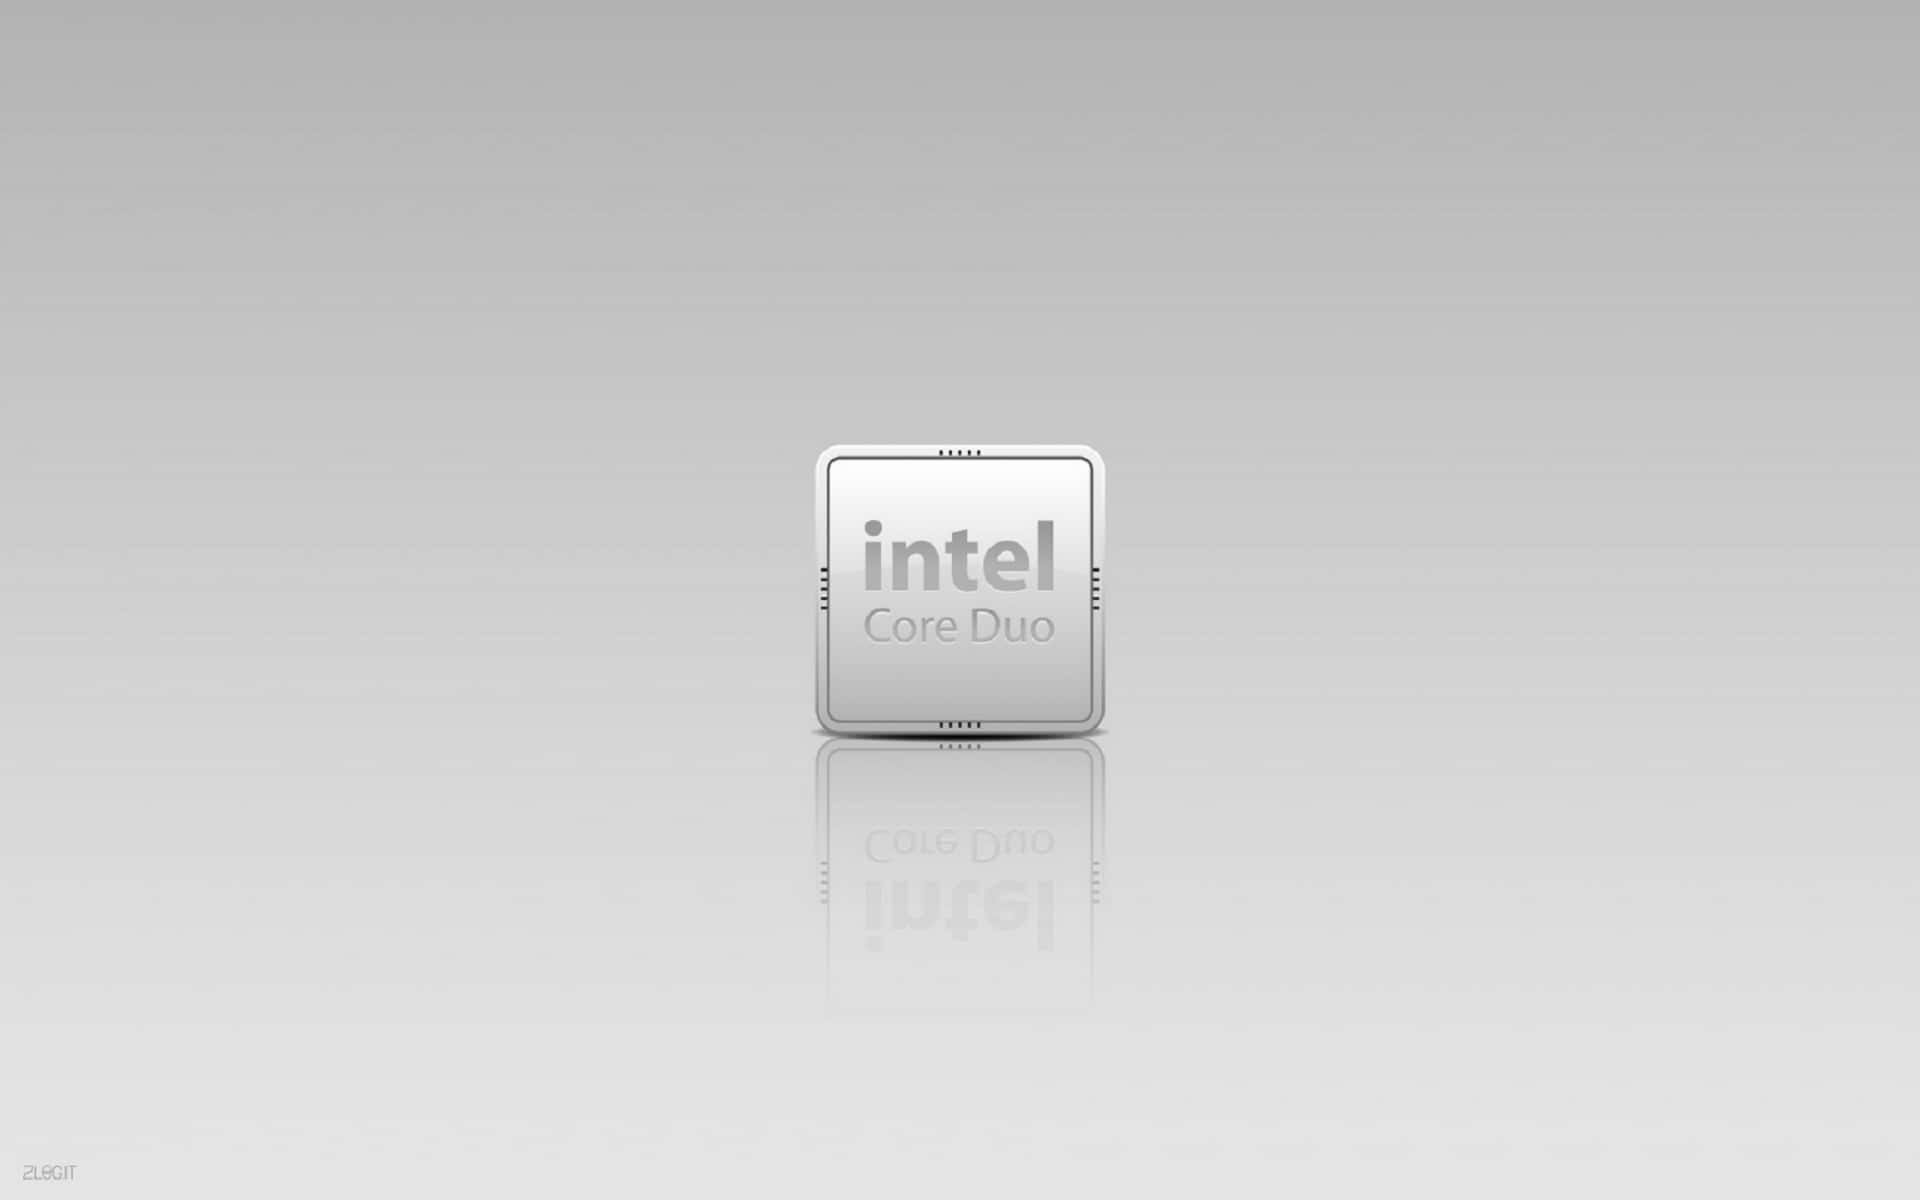 Intel Core Duo Processor Image Wallpaper